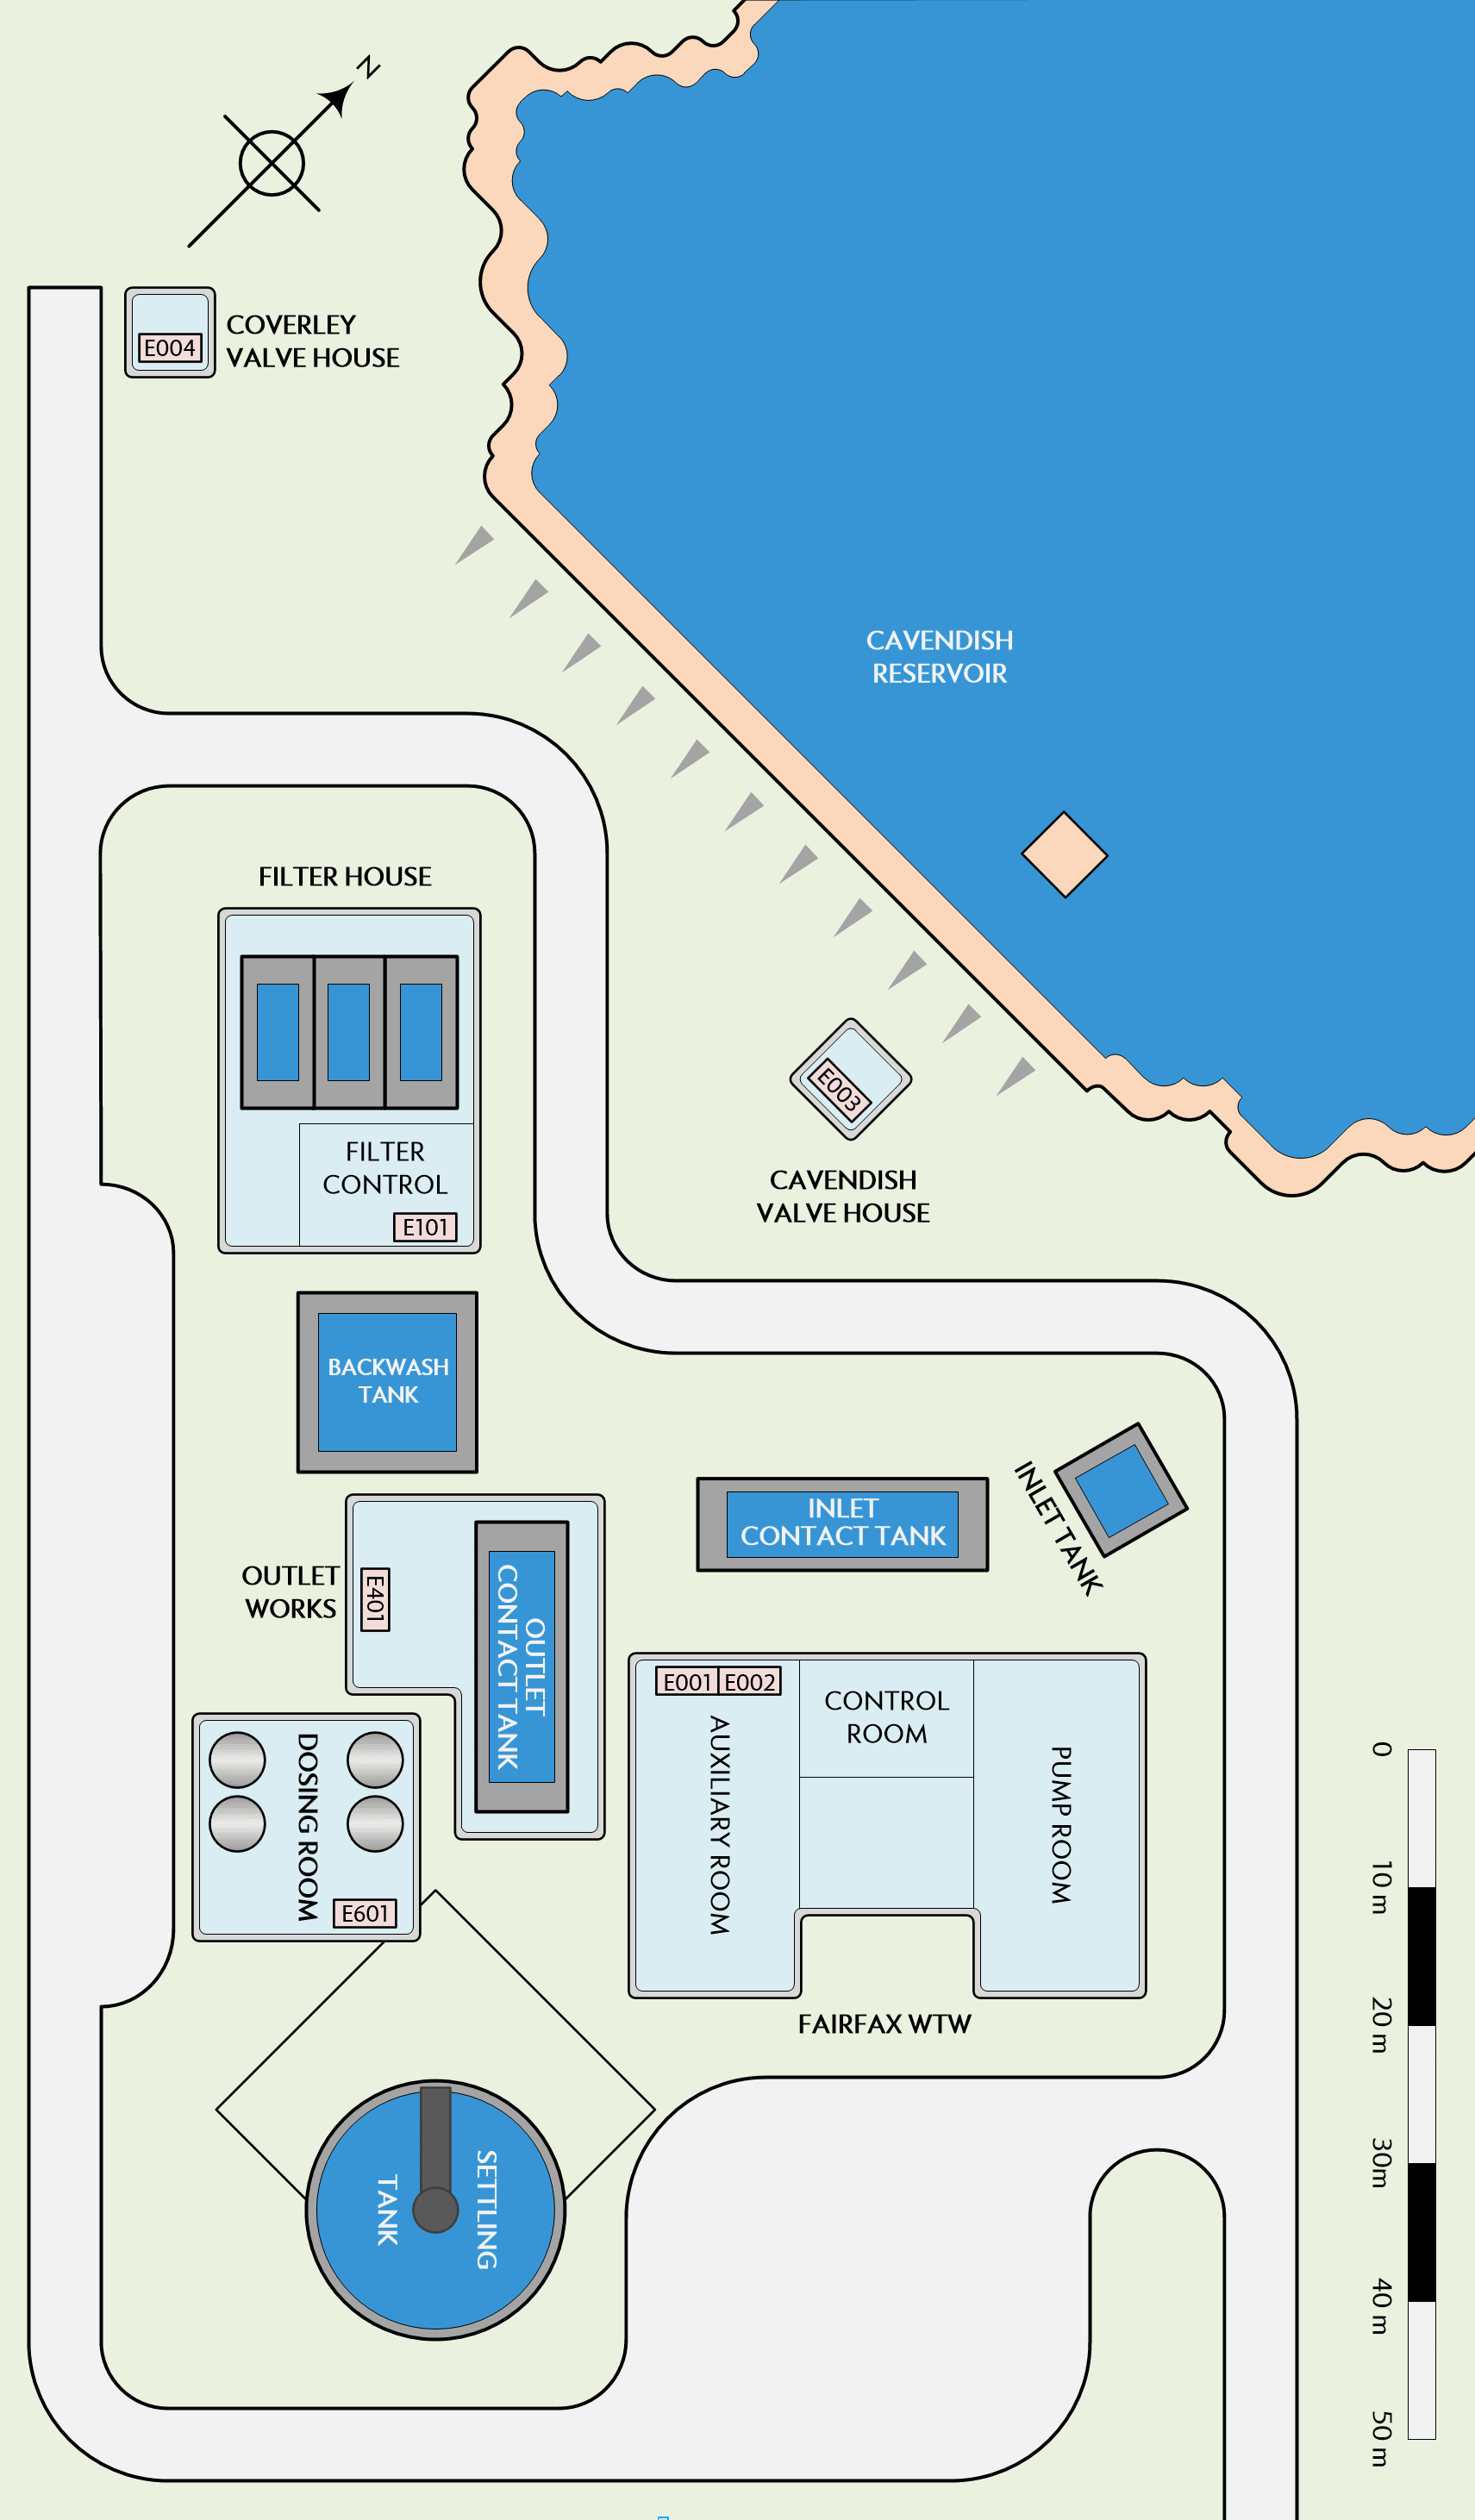 Figure 2.3 - Fairfax WTW site general arrangement